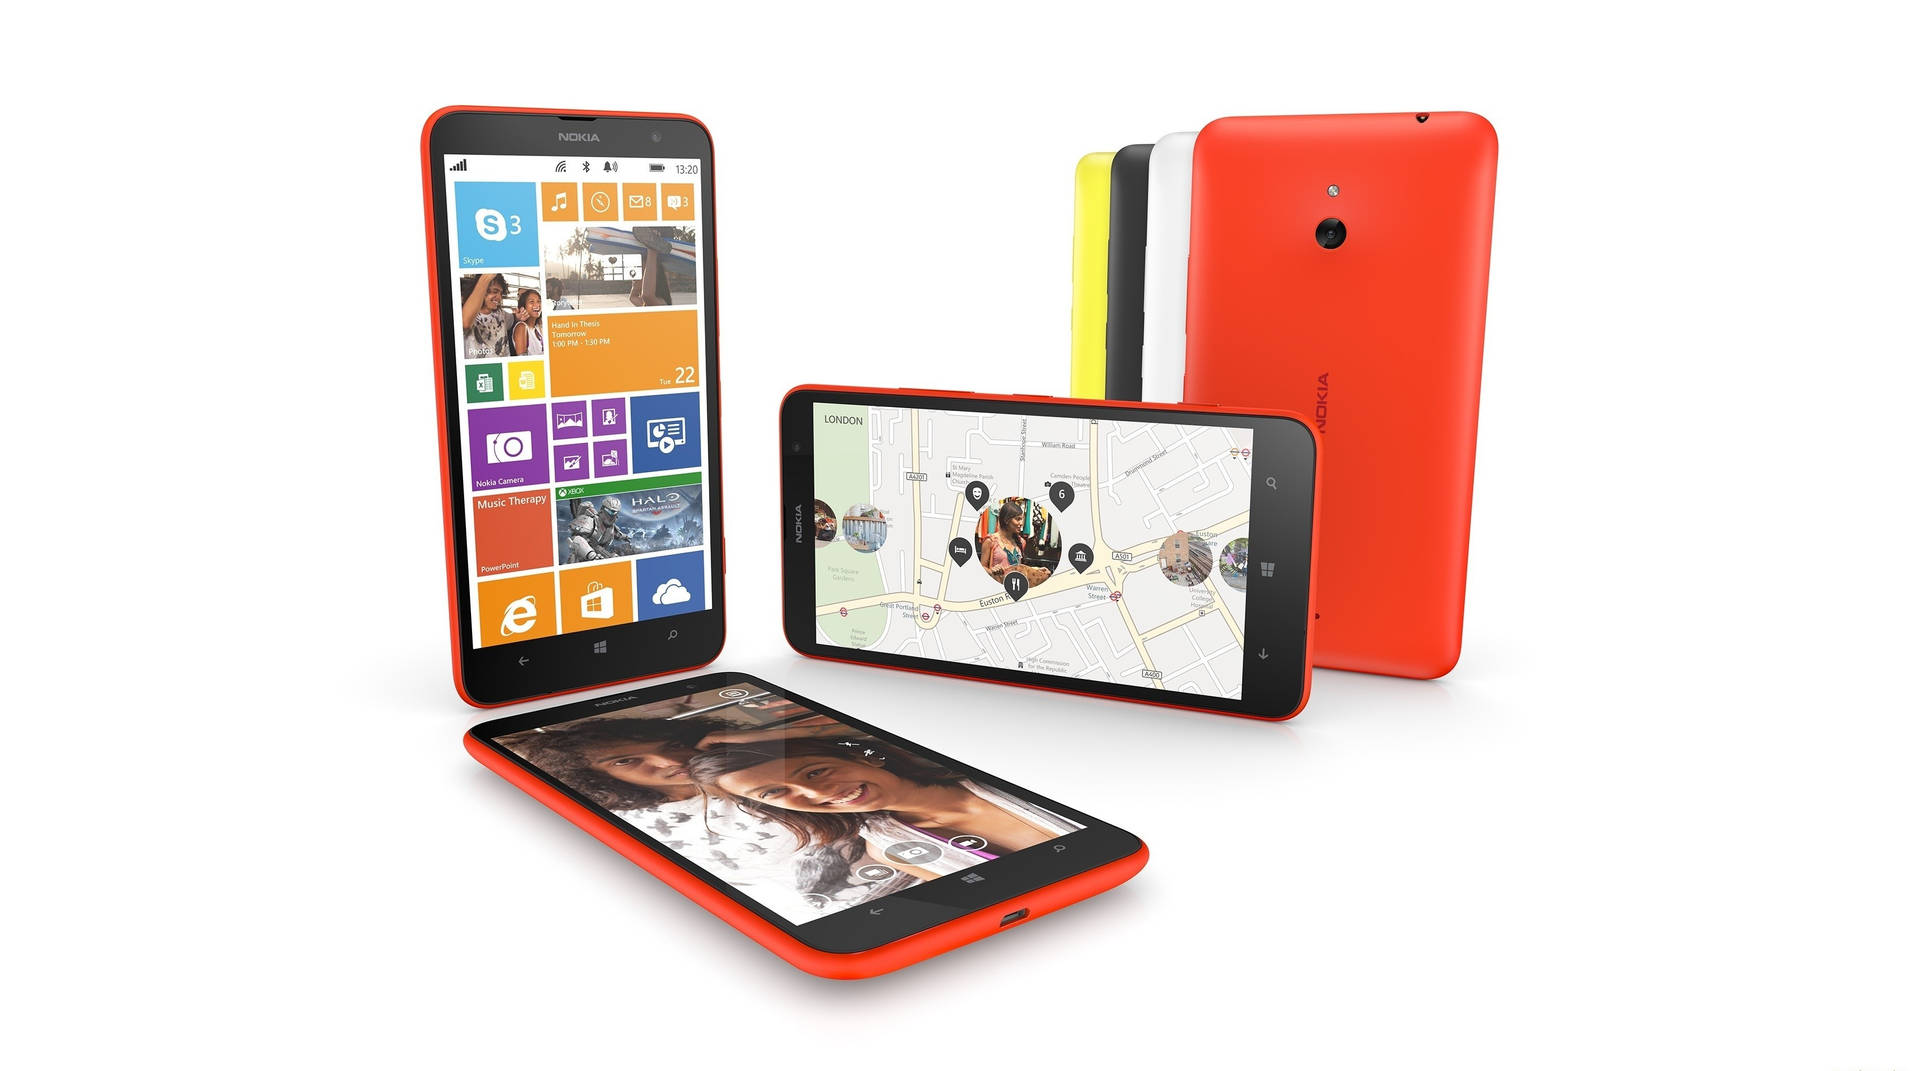 Nokia Lumia 1320 Phablet Smartphone Background